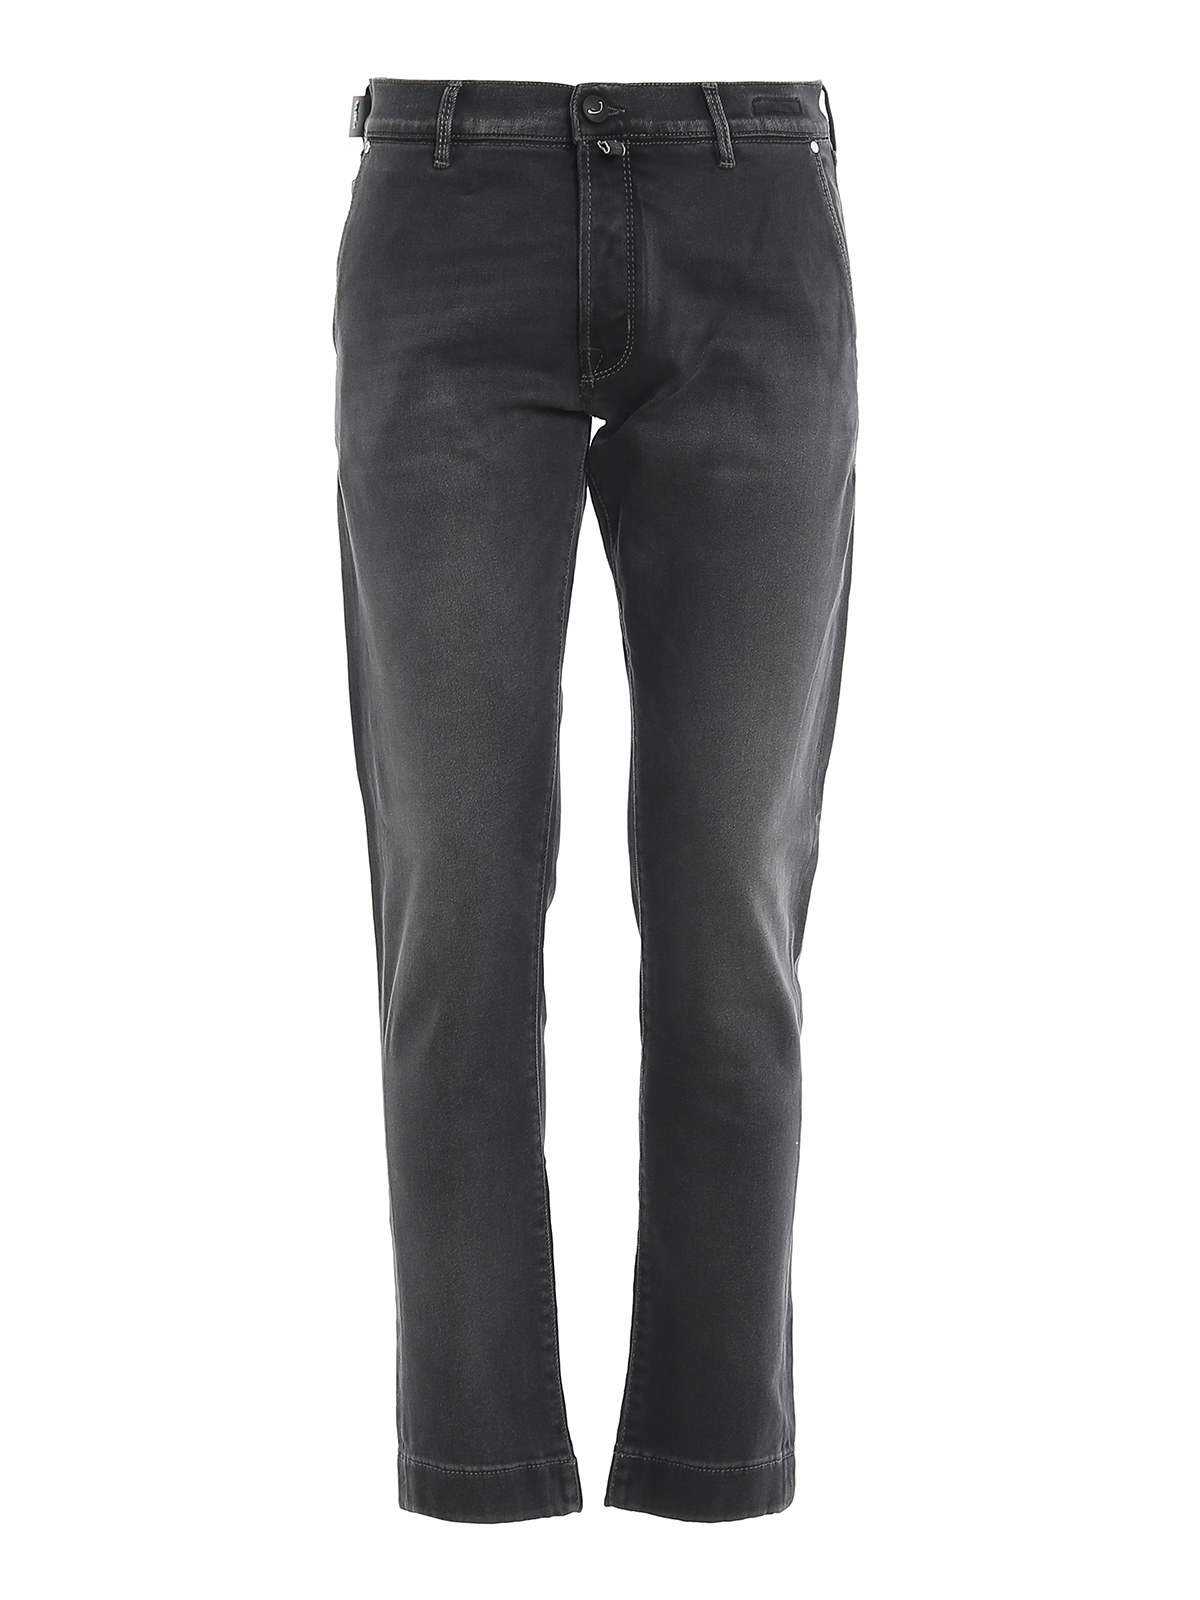 Jacob Cohen Style J676 Comf Grey Jeans